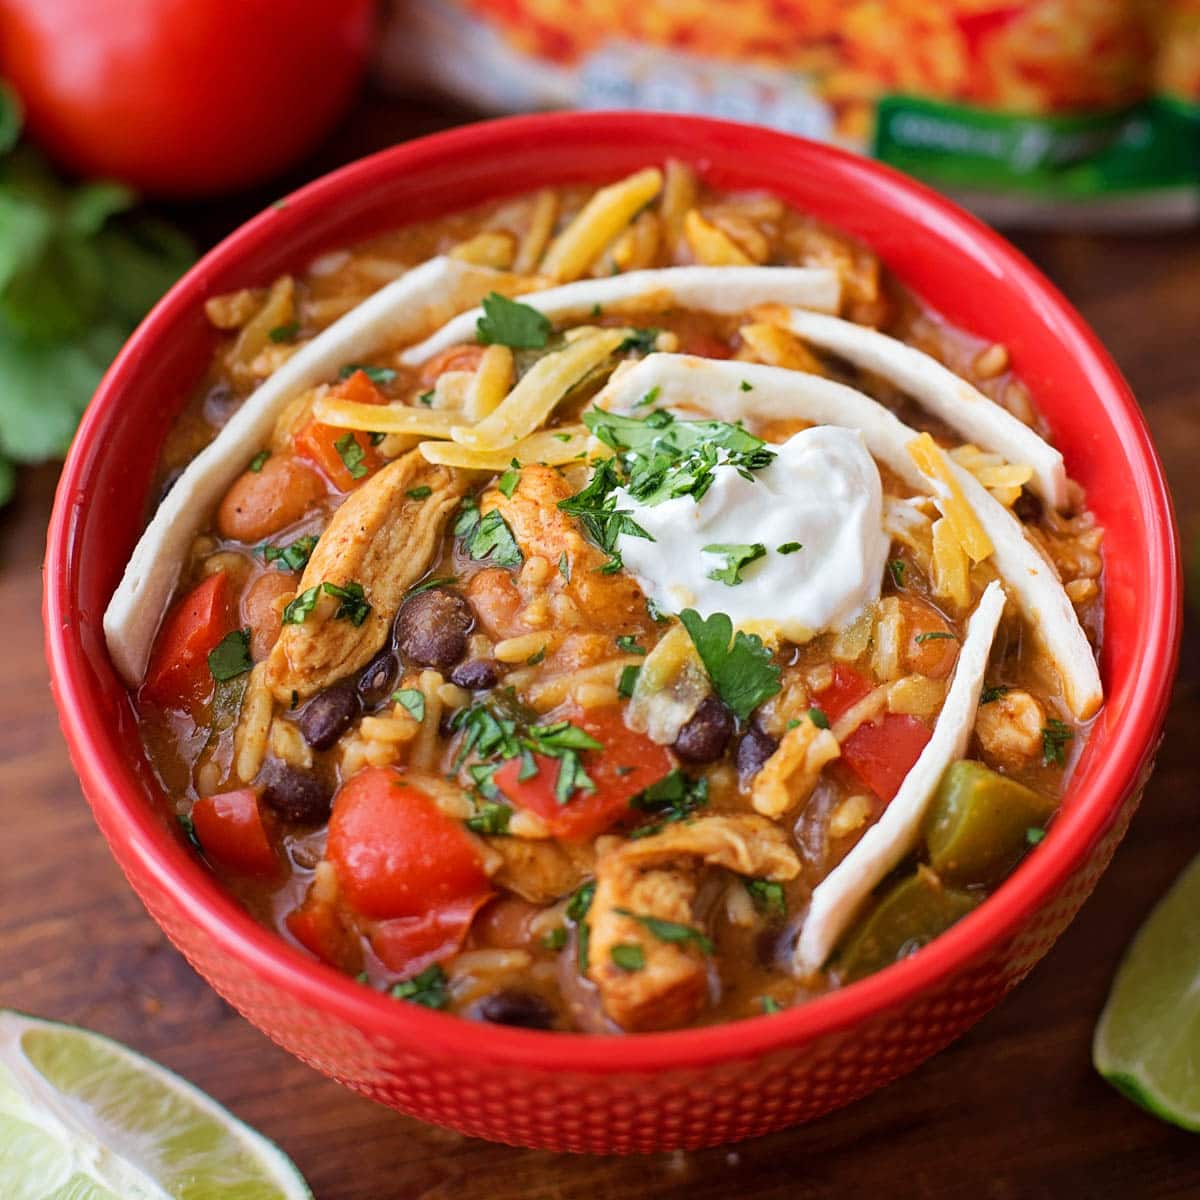 墨西哥汤食谱——碗里装满了bob综合手机客户墨西哥辣椒。